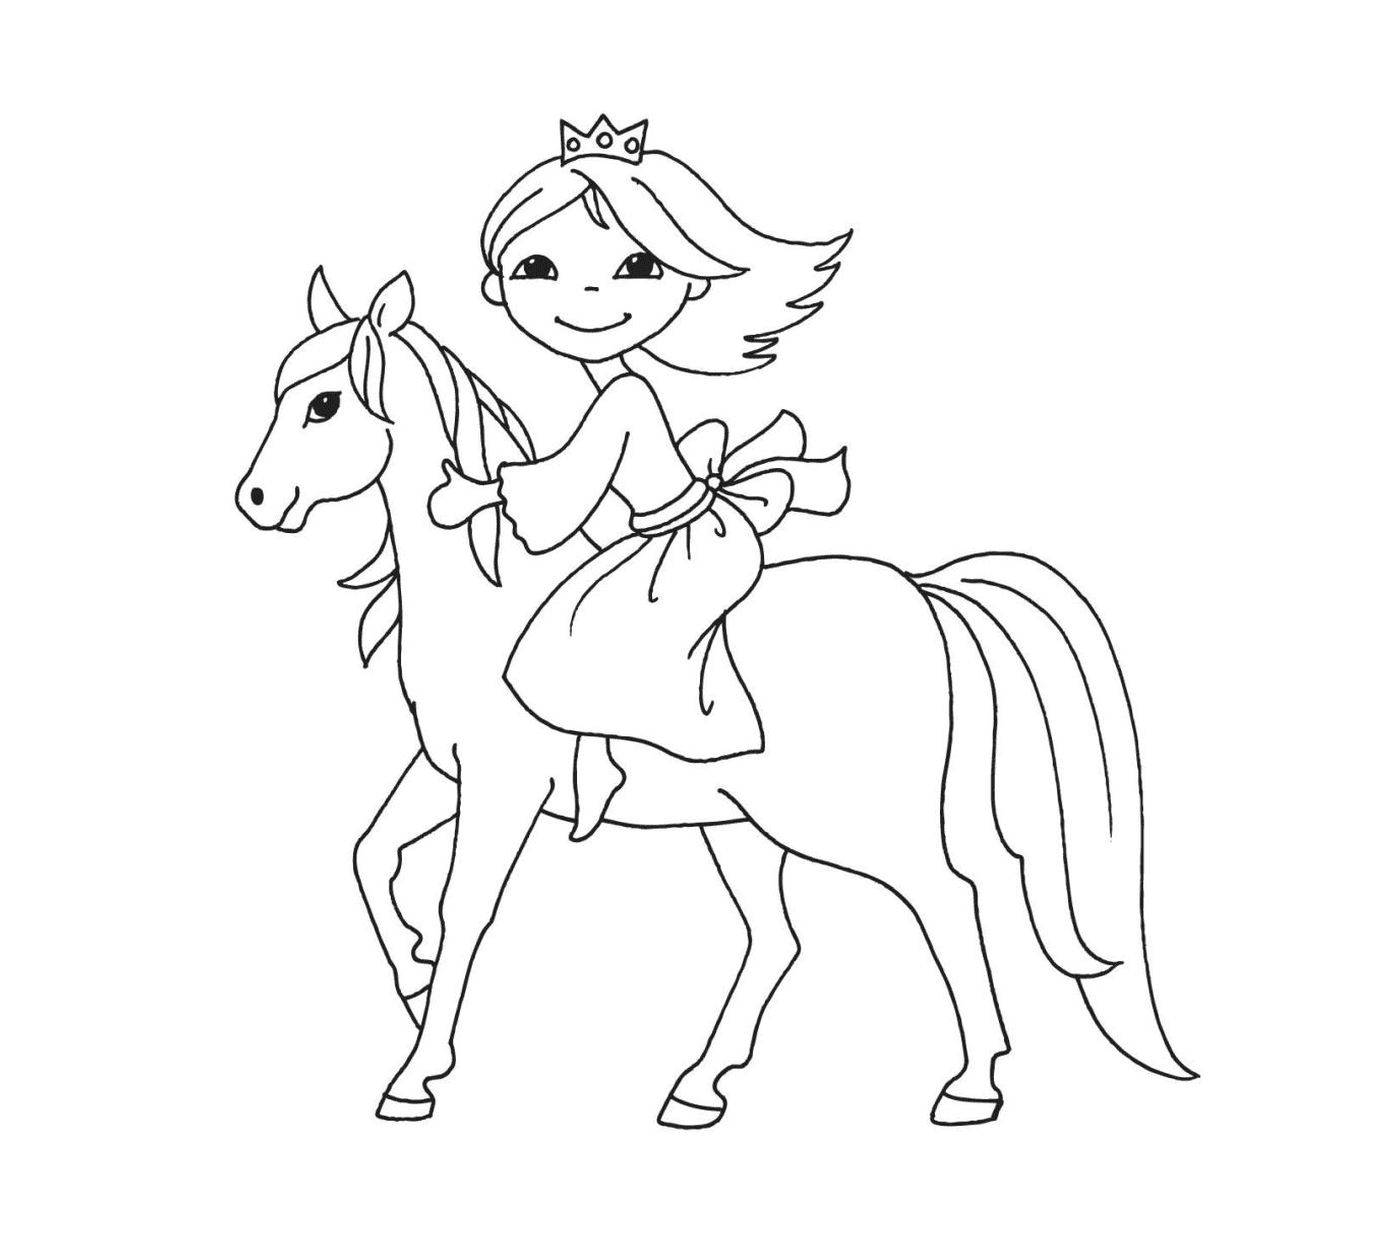  Prinzessin reitet ihr schönes Pferd 